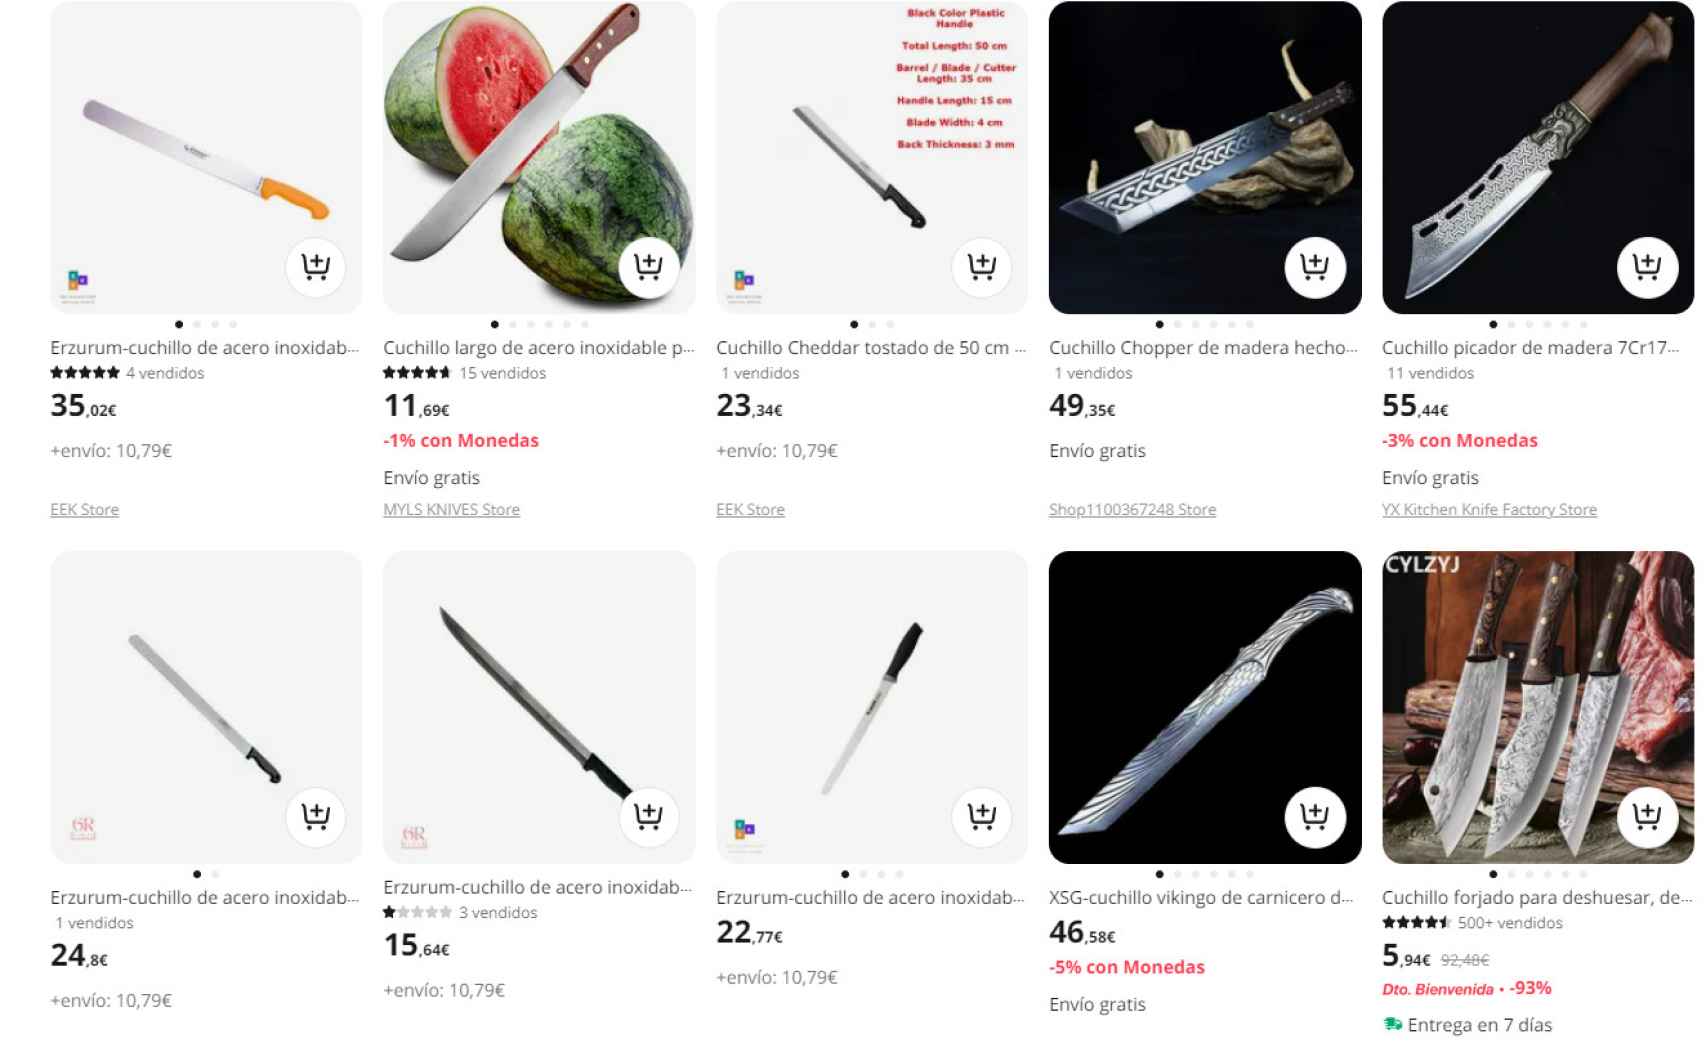 Machetes y cuchillos a la venta en Aliexpress.